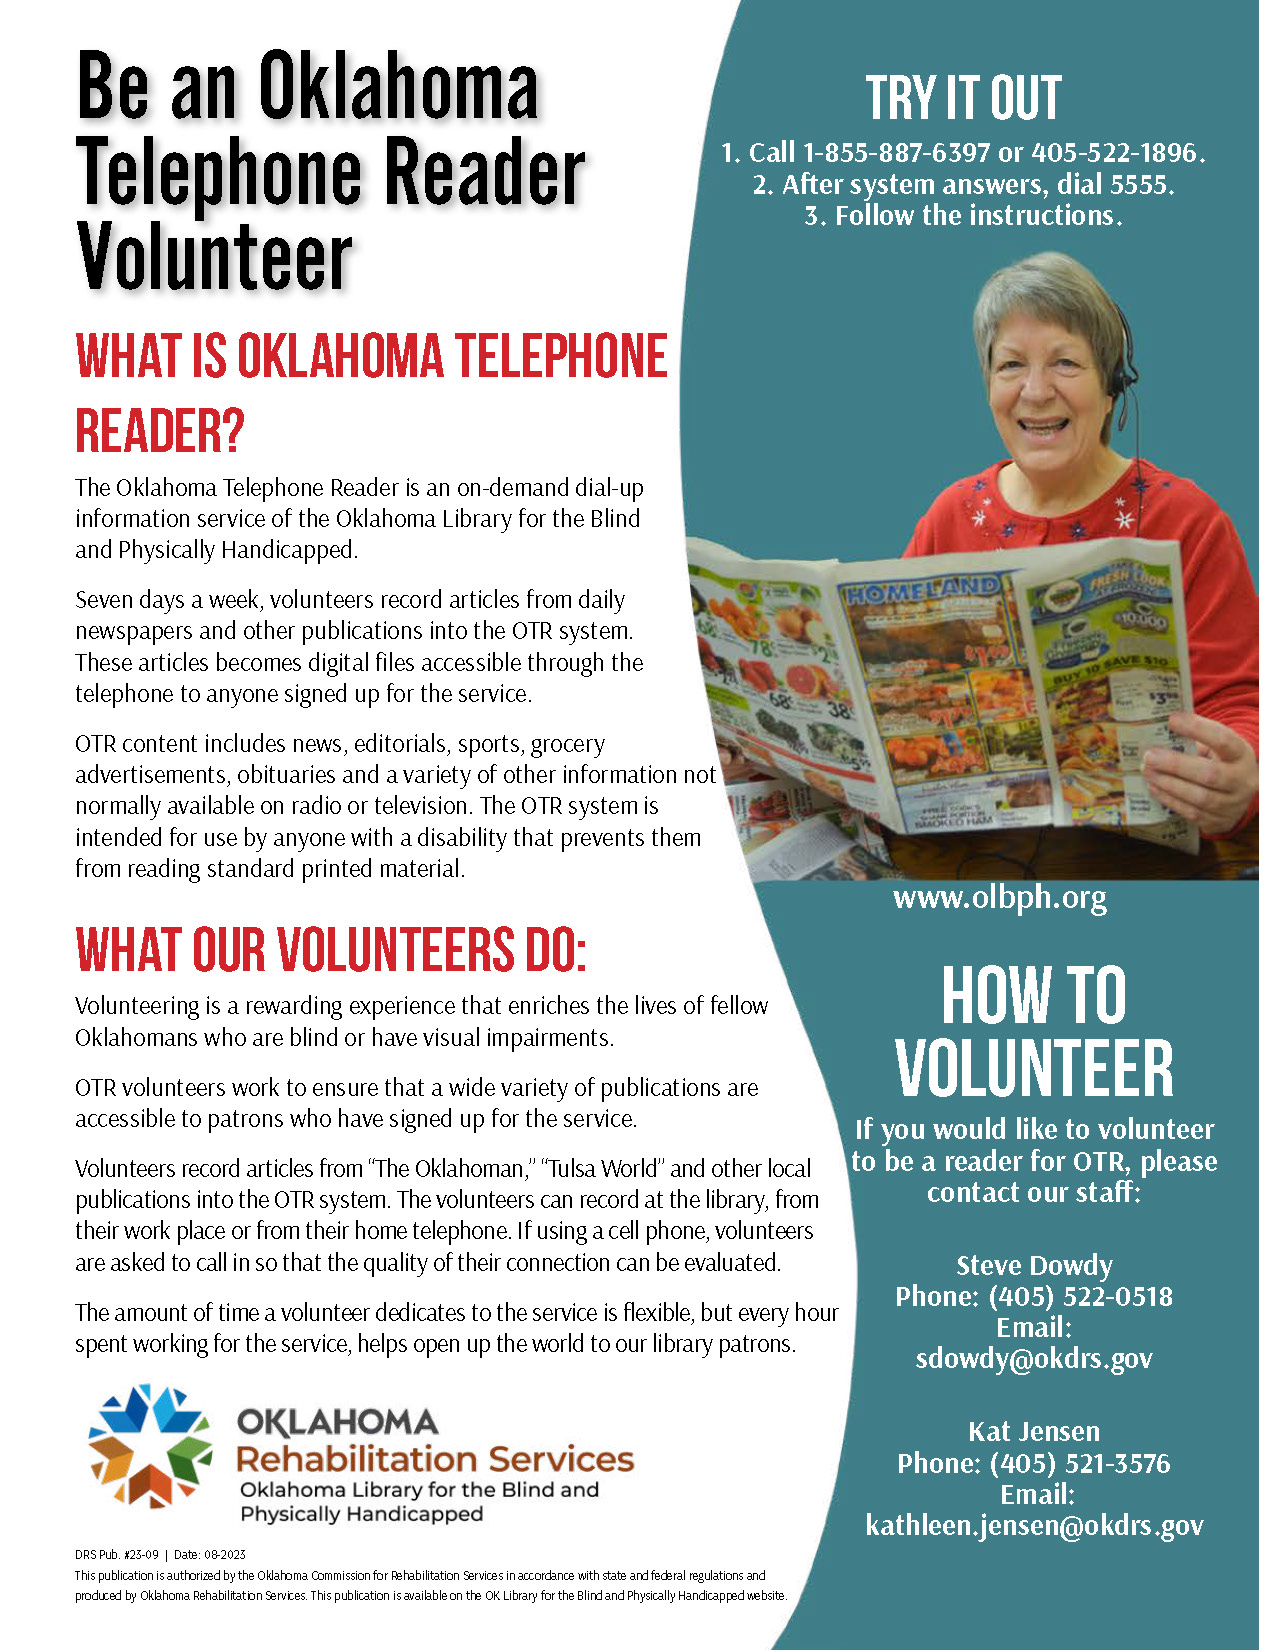 OLBPH Oklahoma Telephone Reader Flyer